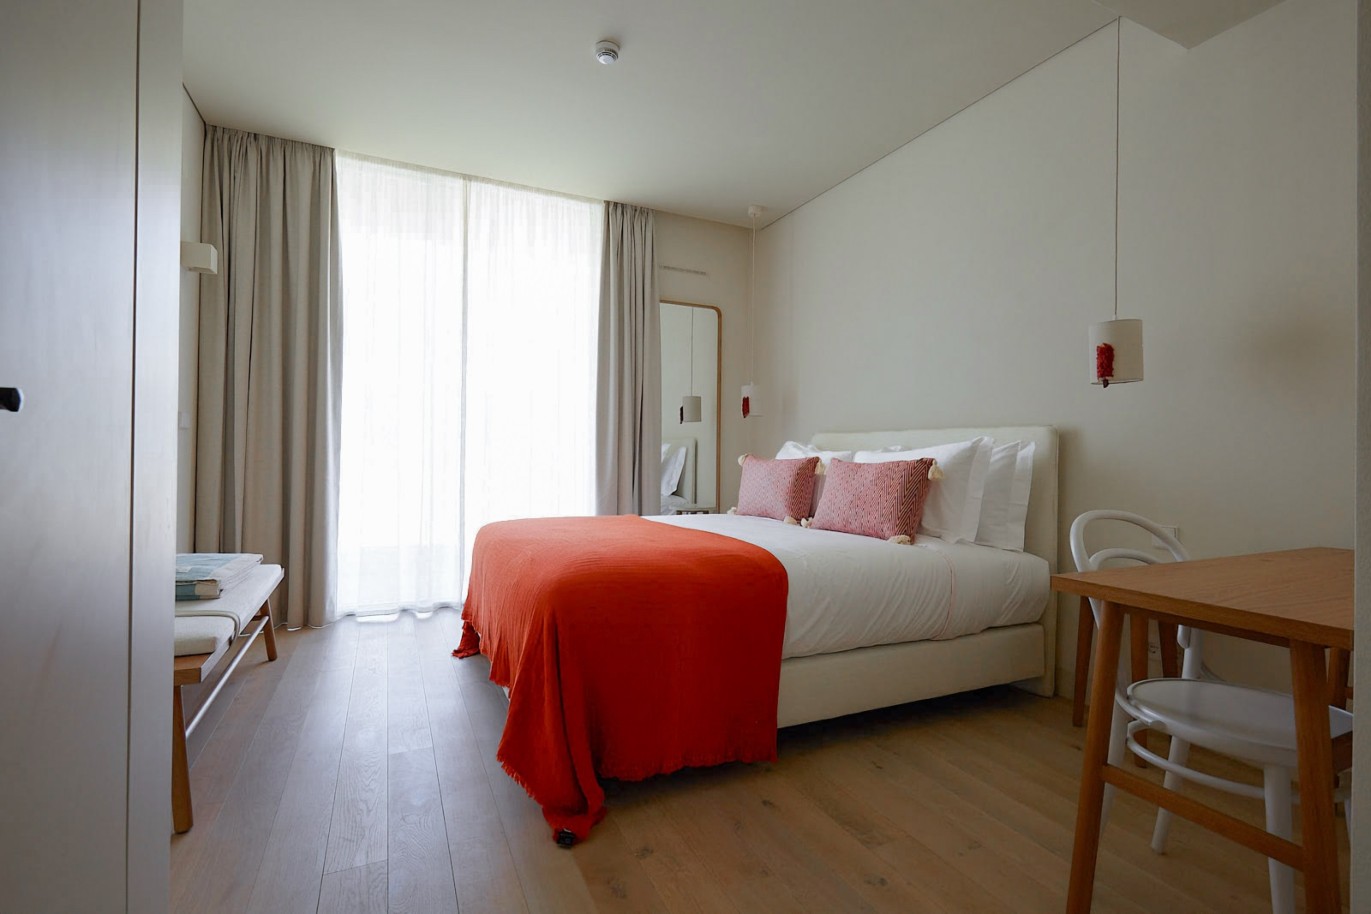 3 bedroom flat in resort, for sale in Porches, Algarve_230736